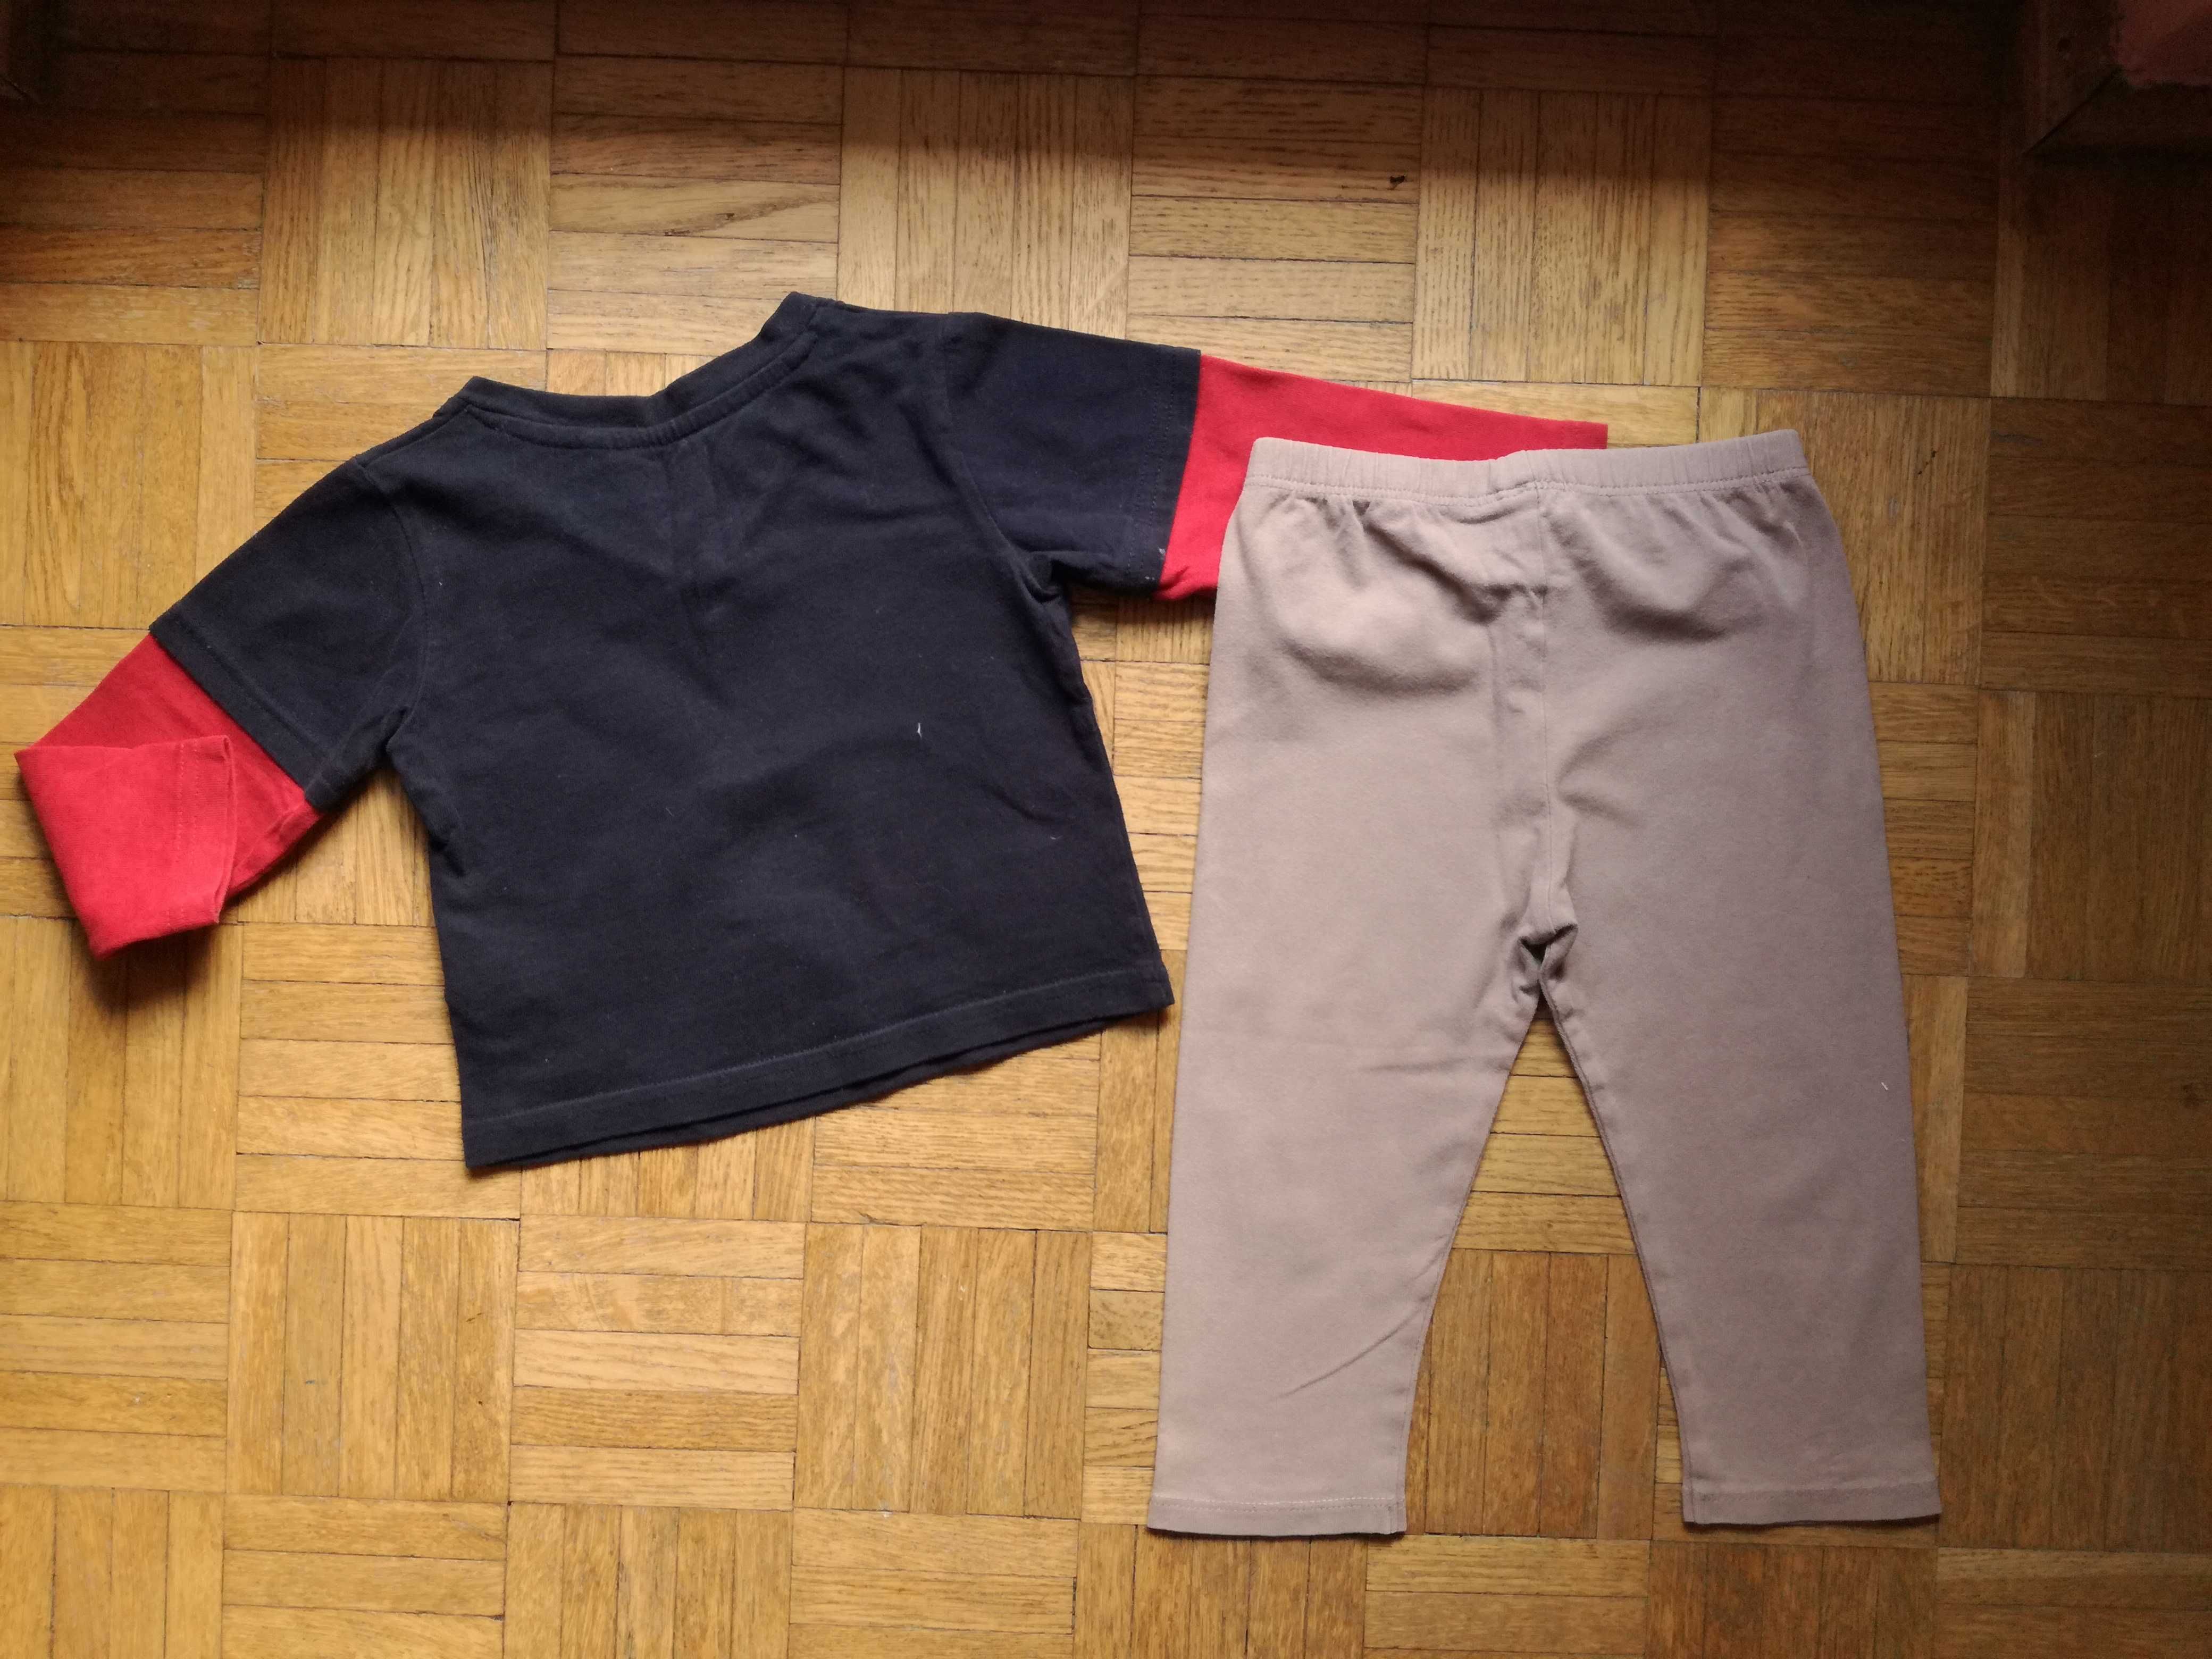 Komplet: bluzka George z rakietą + beżowe legginsy, r. 86